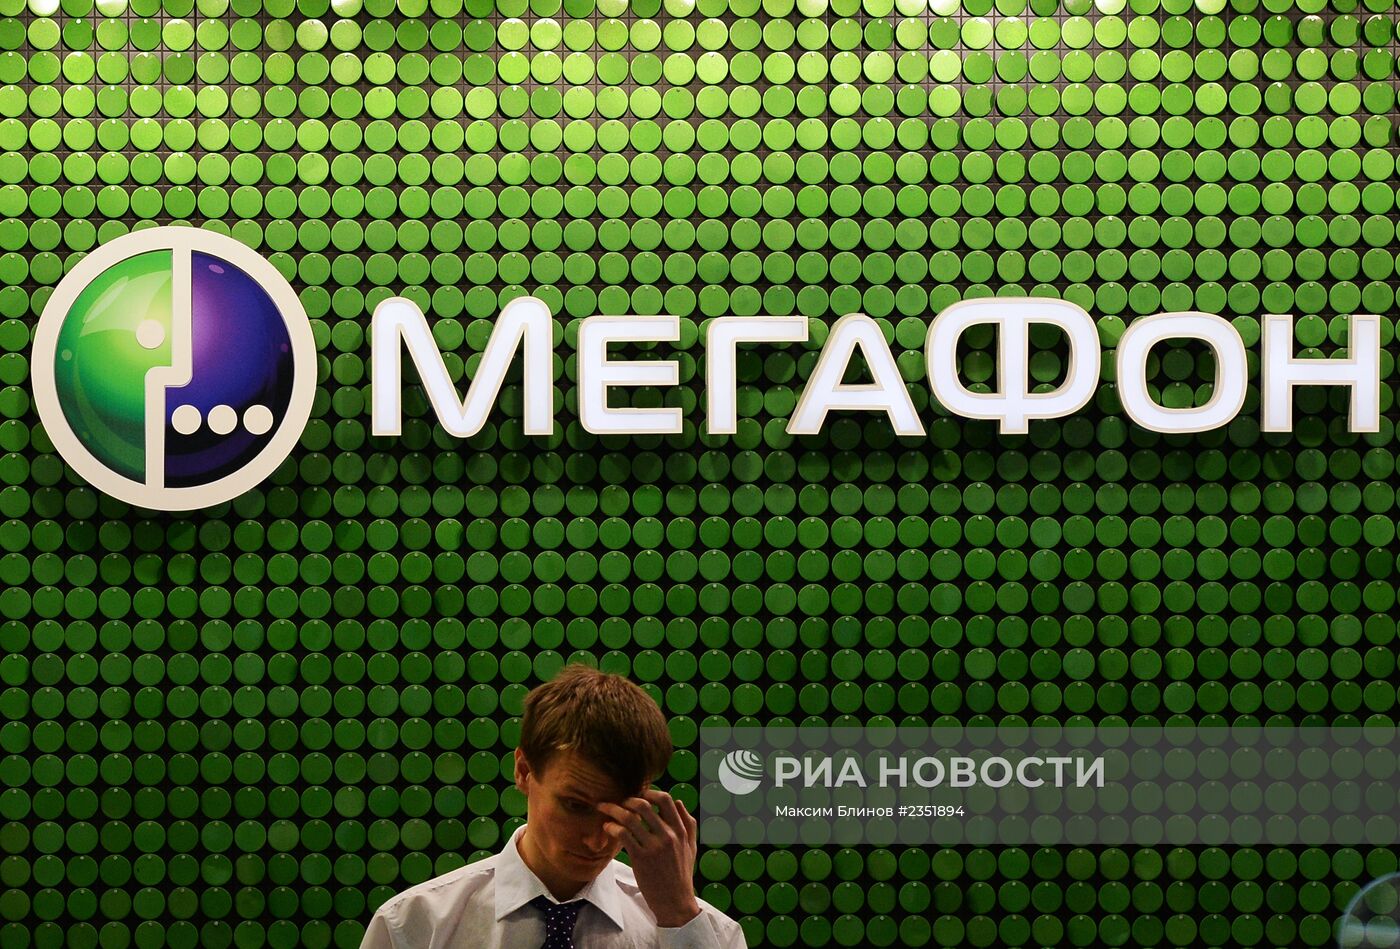 Салоны сотовой связи в Москве